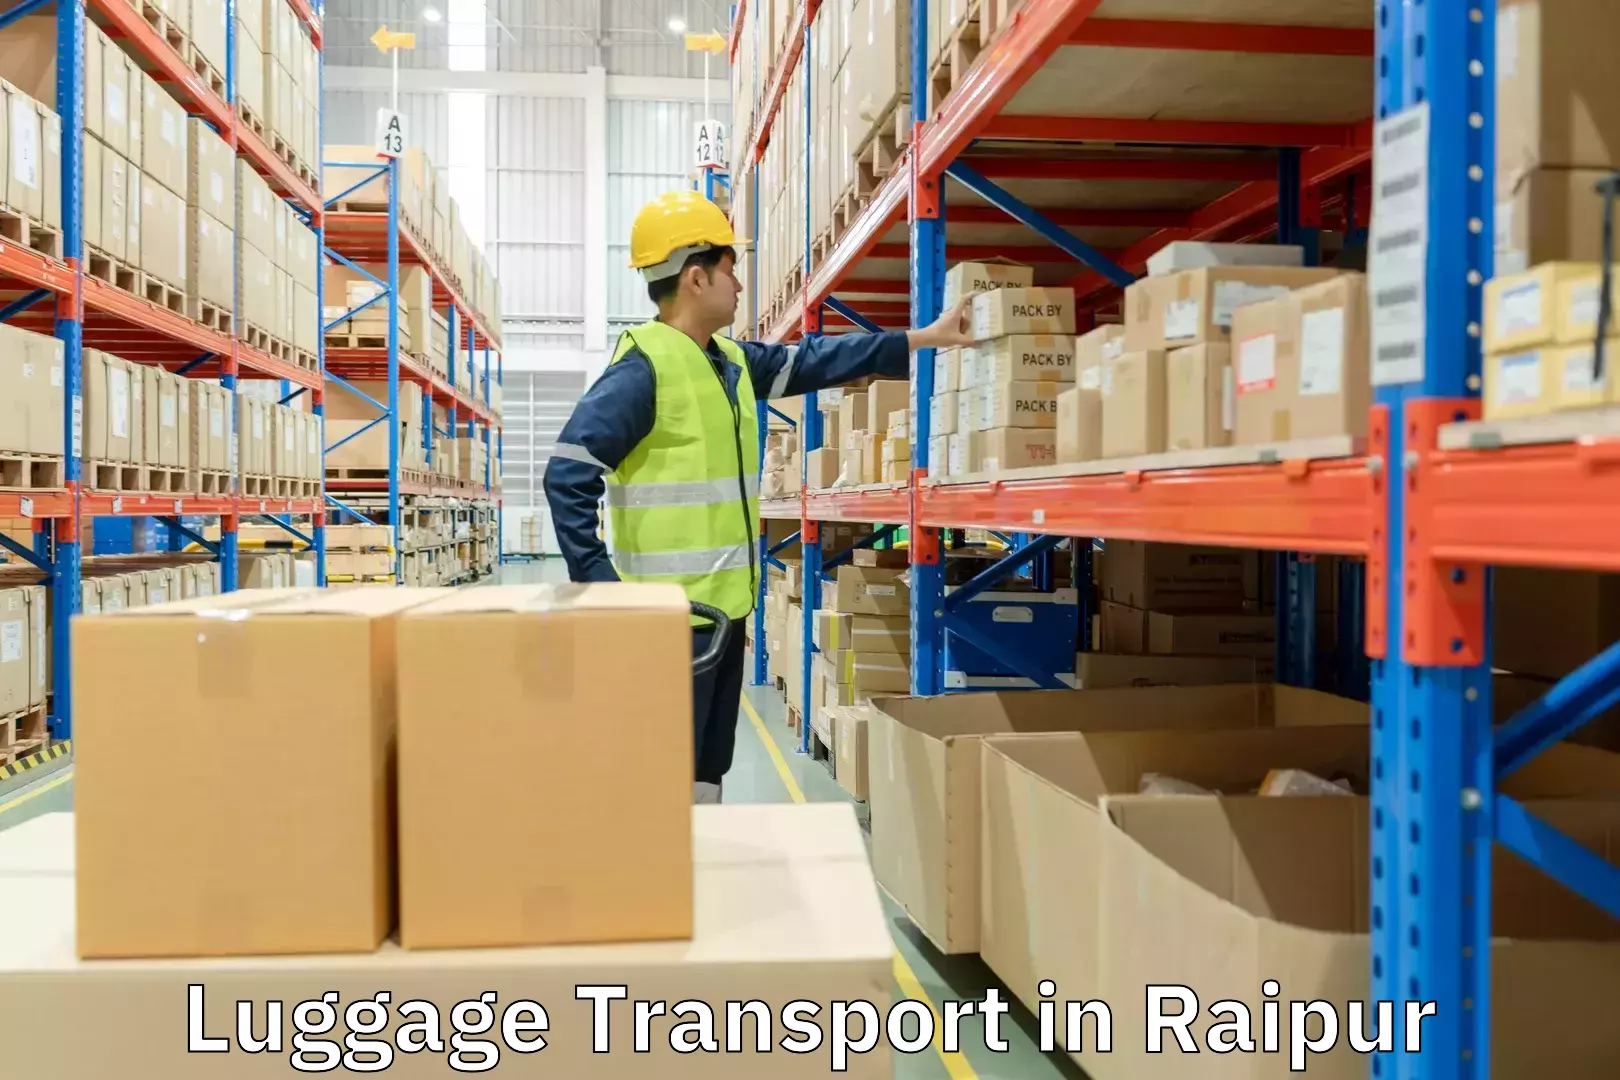 Multi-destination luggage transport in Raipur